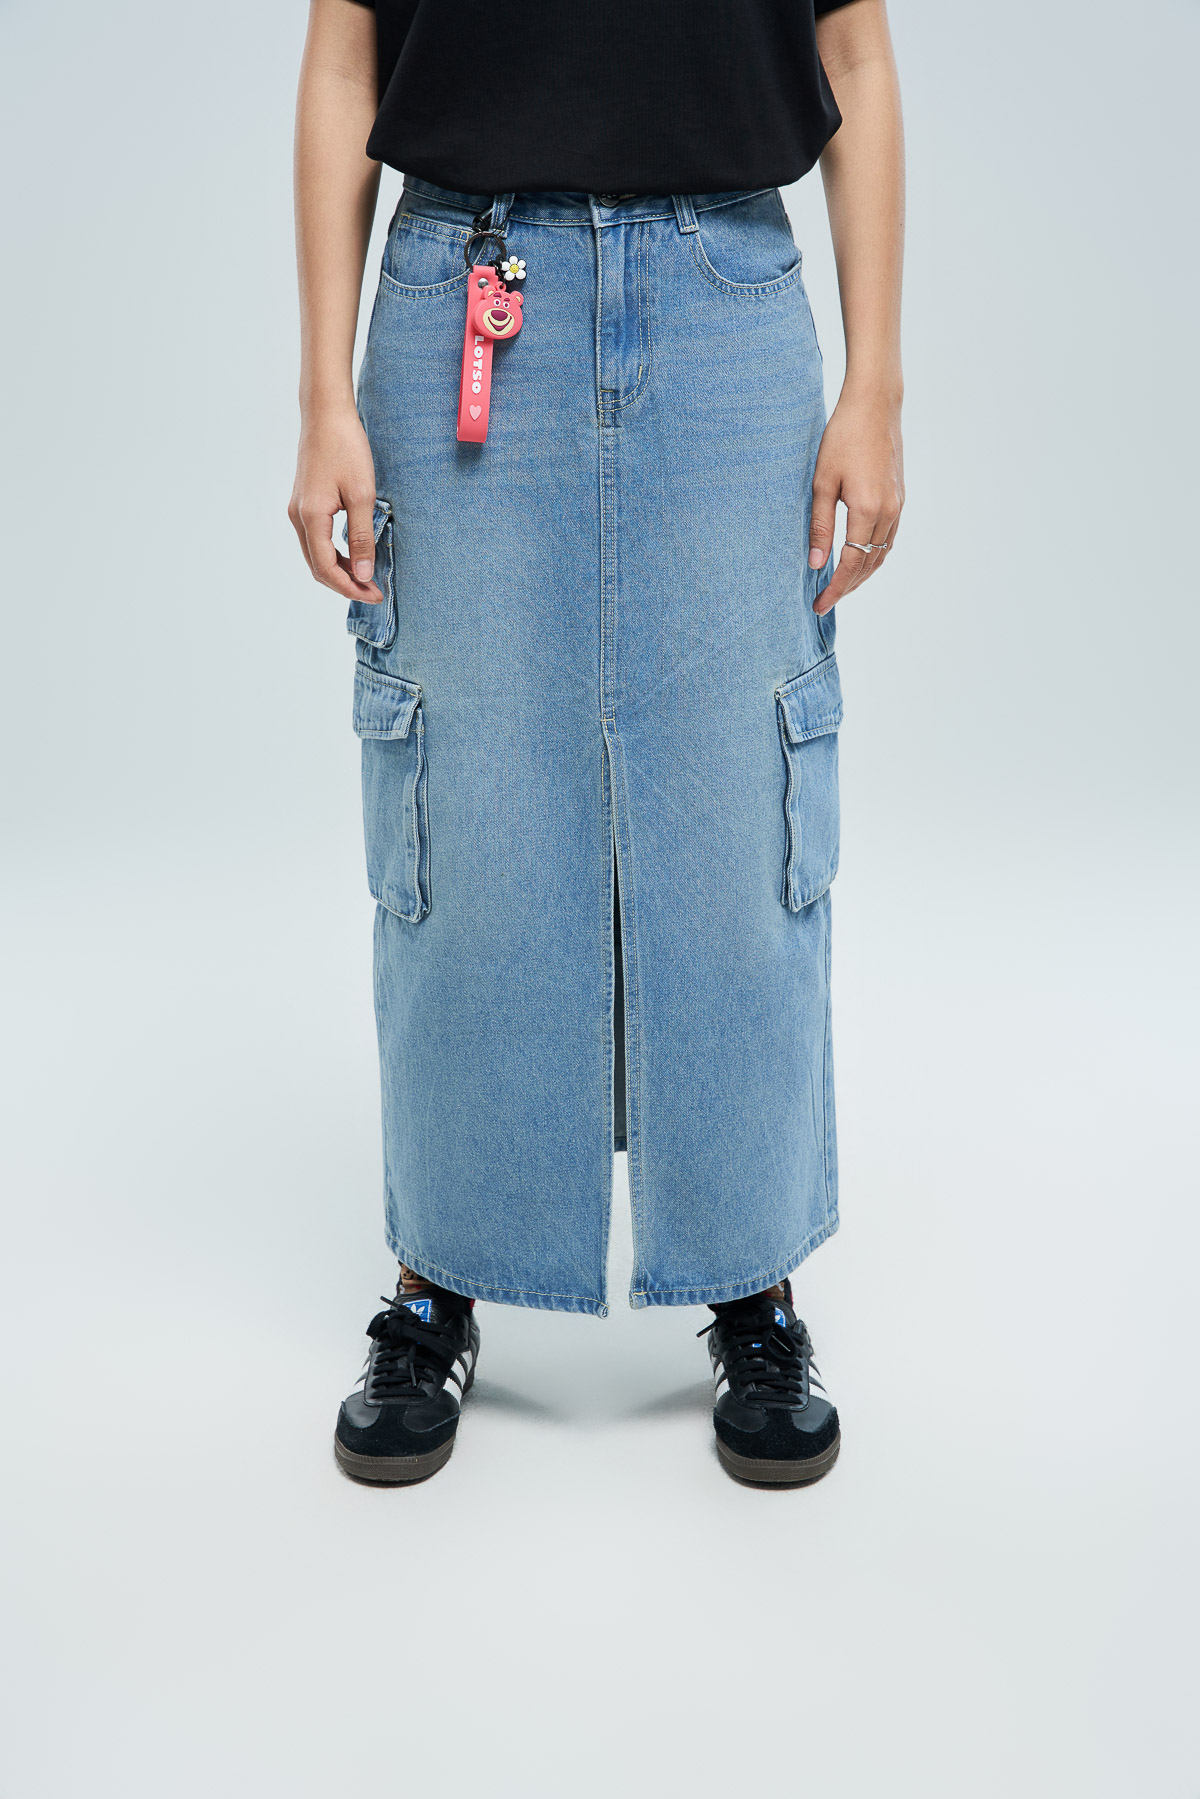 🌸 Mặc quần jean với váy dài chất như Rosé🌸 | Bộ sưu tập do neyuyud đăng |  Lemon8